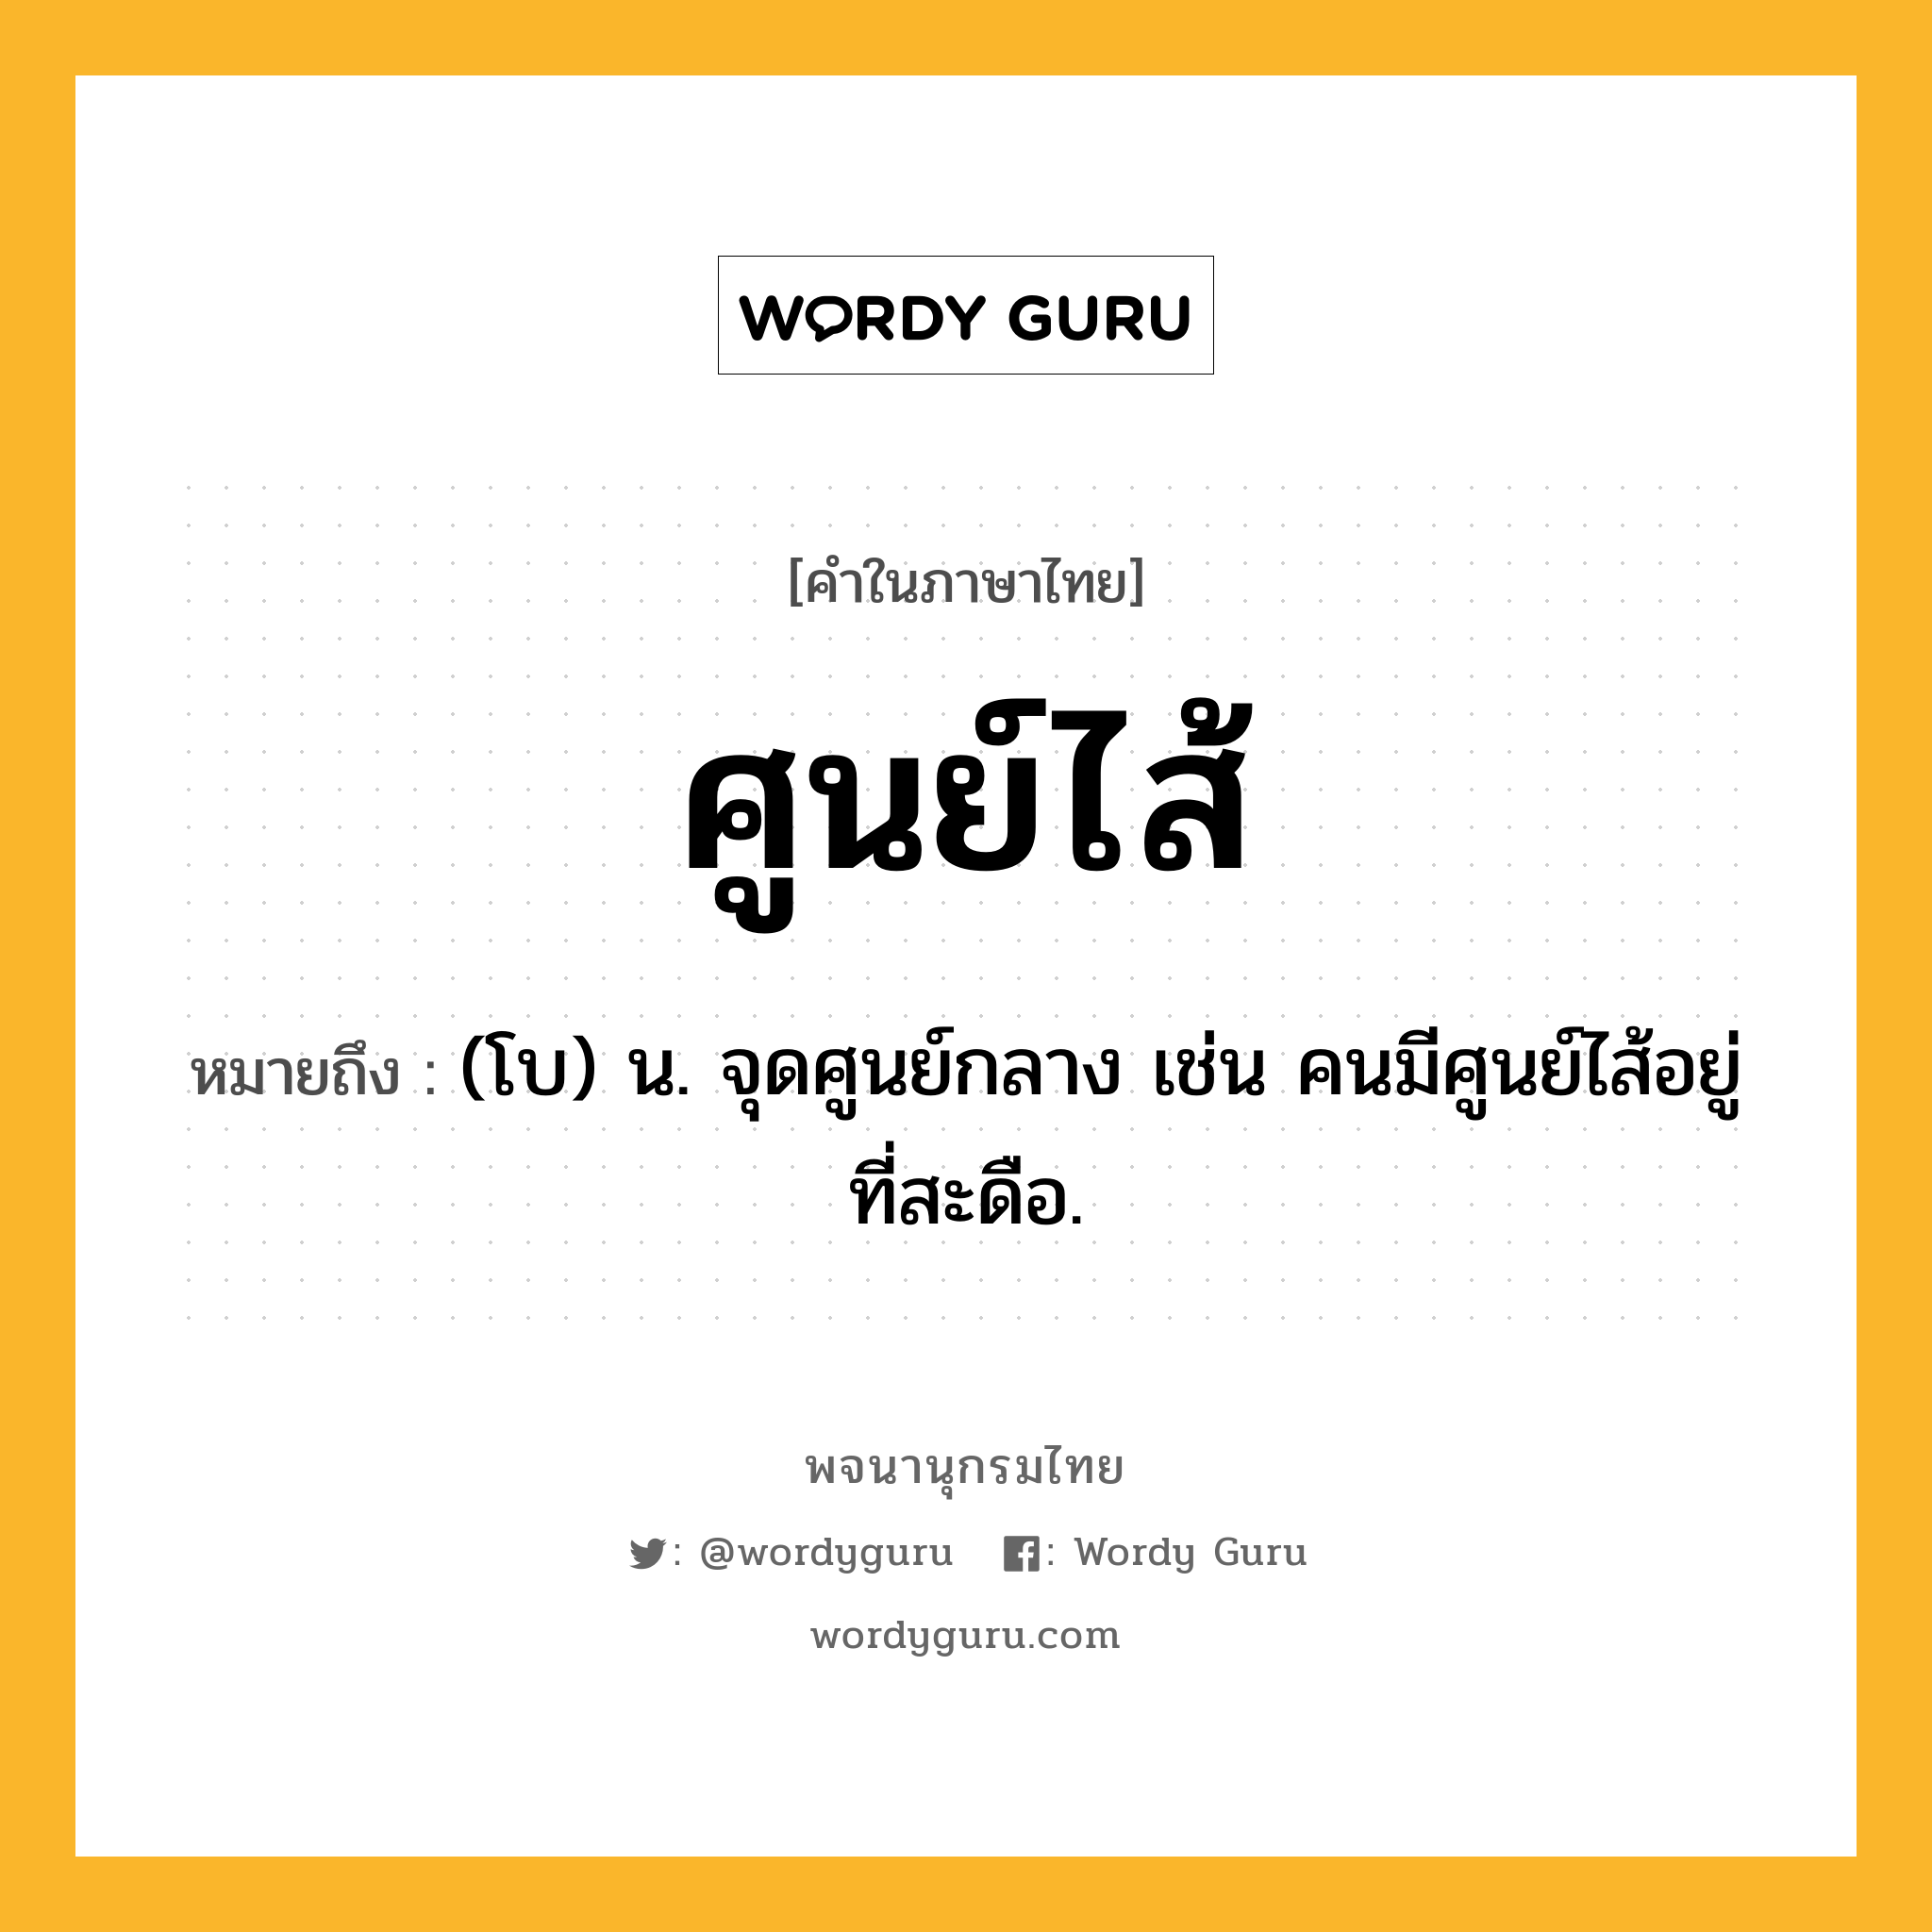 ศูนย์ไส้ ความหมาย หมายถึงอะไร?, คำในภาษาไทย ศูนย์ไส้ หมายถึง (โบ) น. จุดศูนย์กลาง เช่น คนมีศูนย์ไส้อยู่ที่สะดือ.